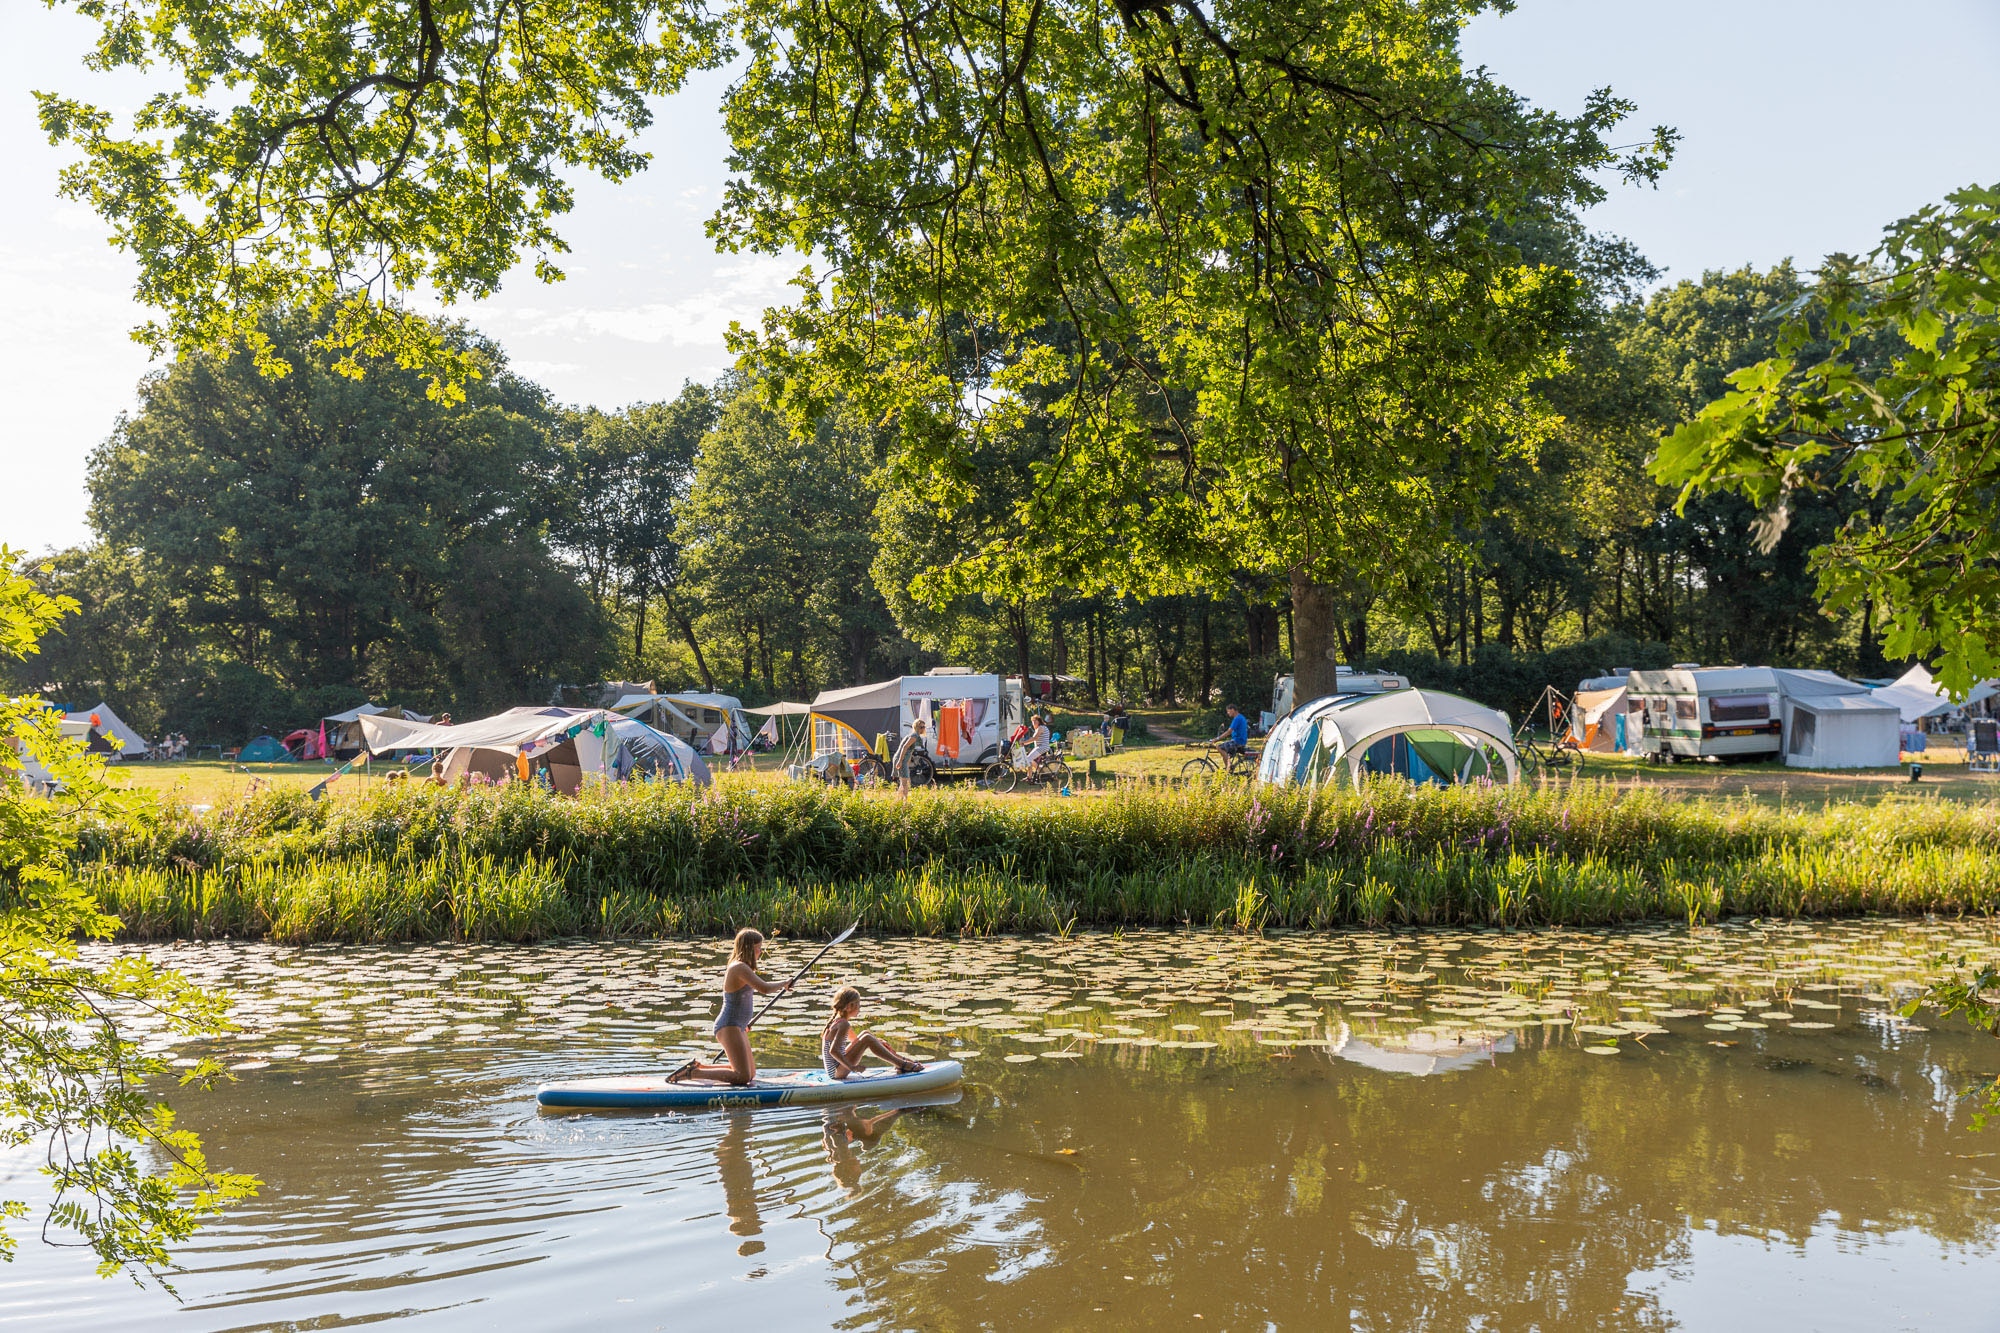 Camping Huttopia De Roos